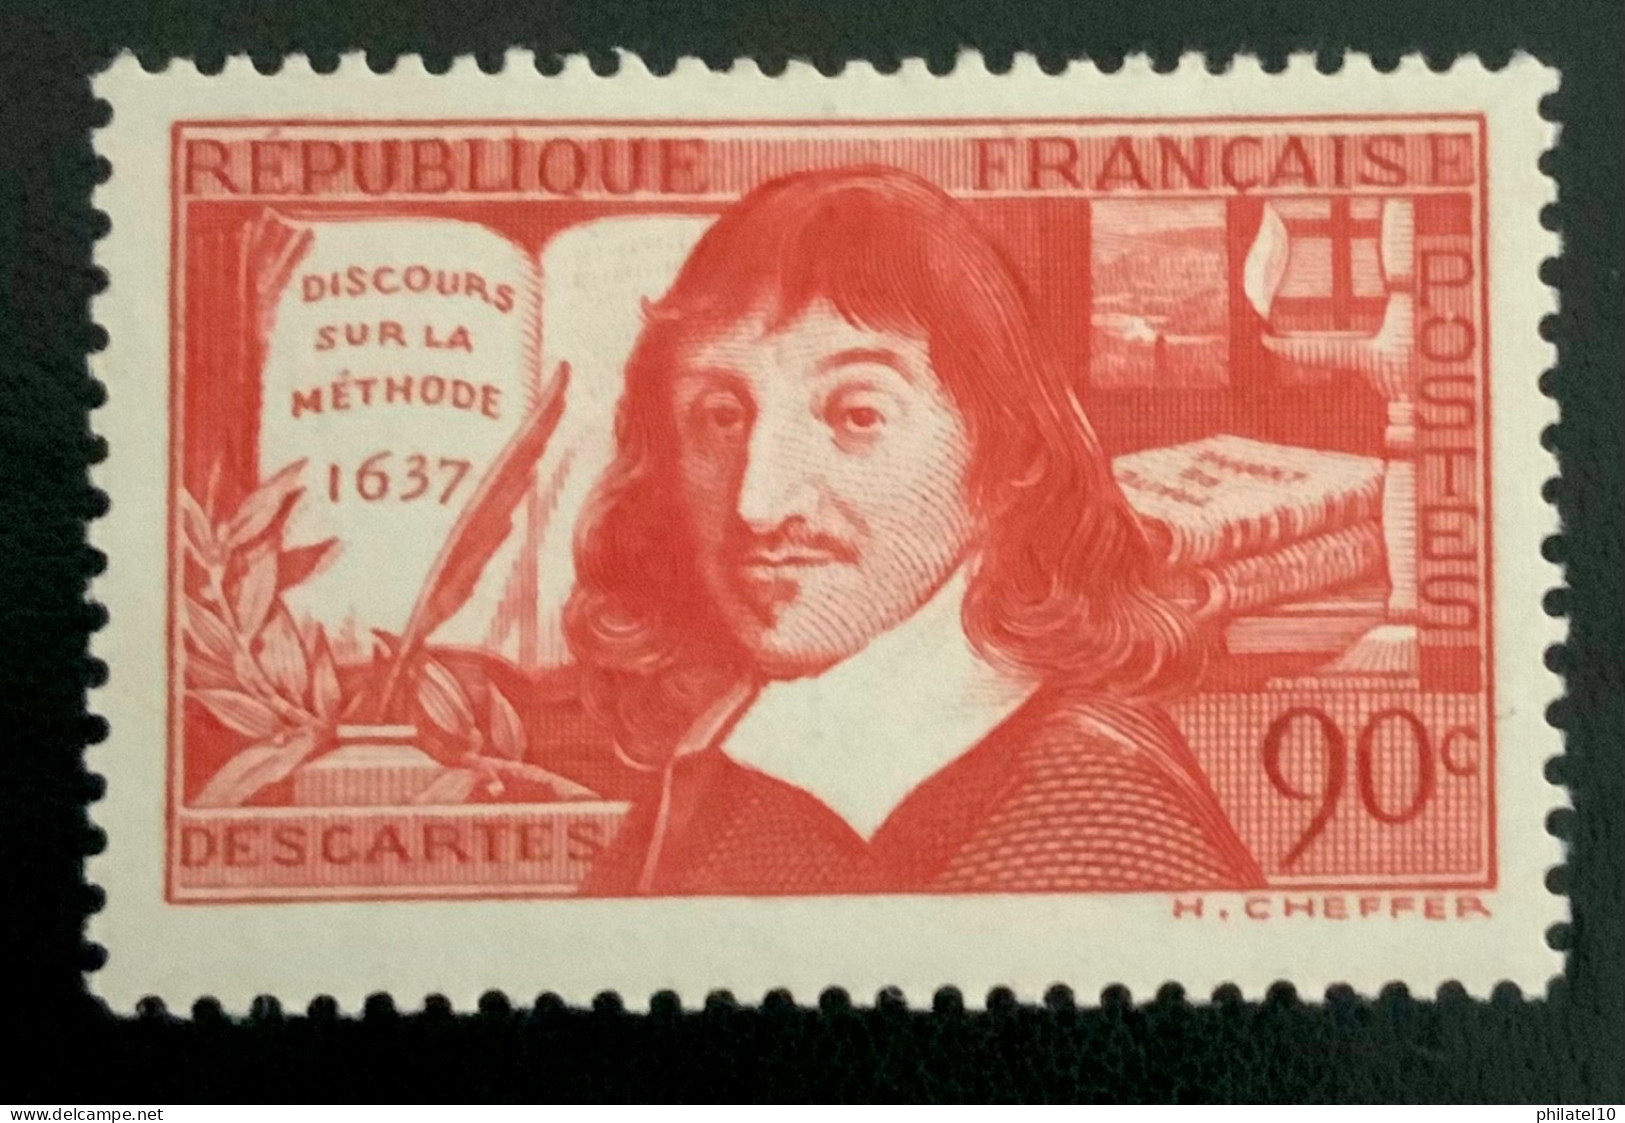 1937 FRANCE N 341 DISCOURS SUR LA MÉTHODE 1637 DESCARTES - NEUF* - Unused Stamps